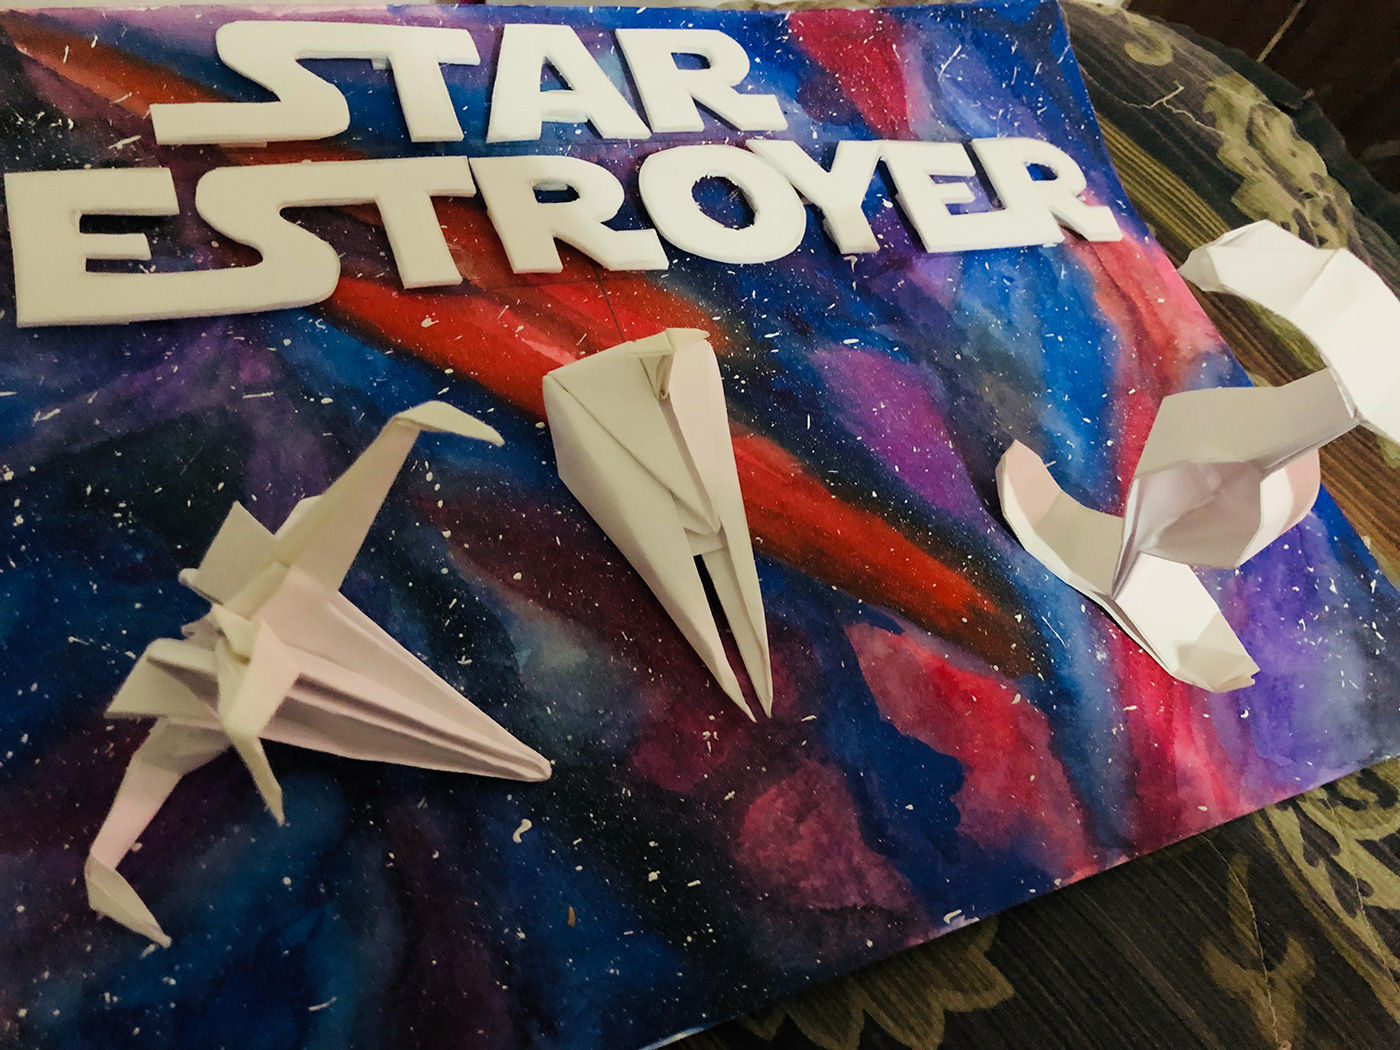 star Destroyer spaceship star wars